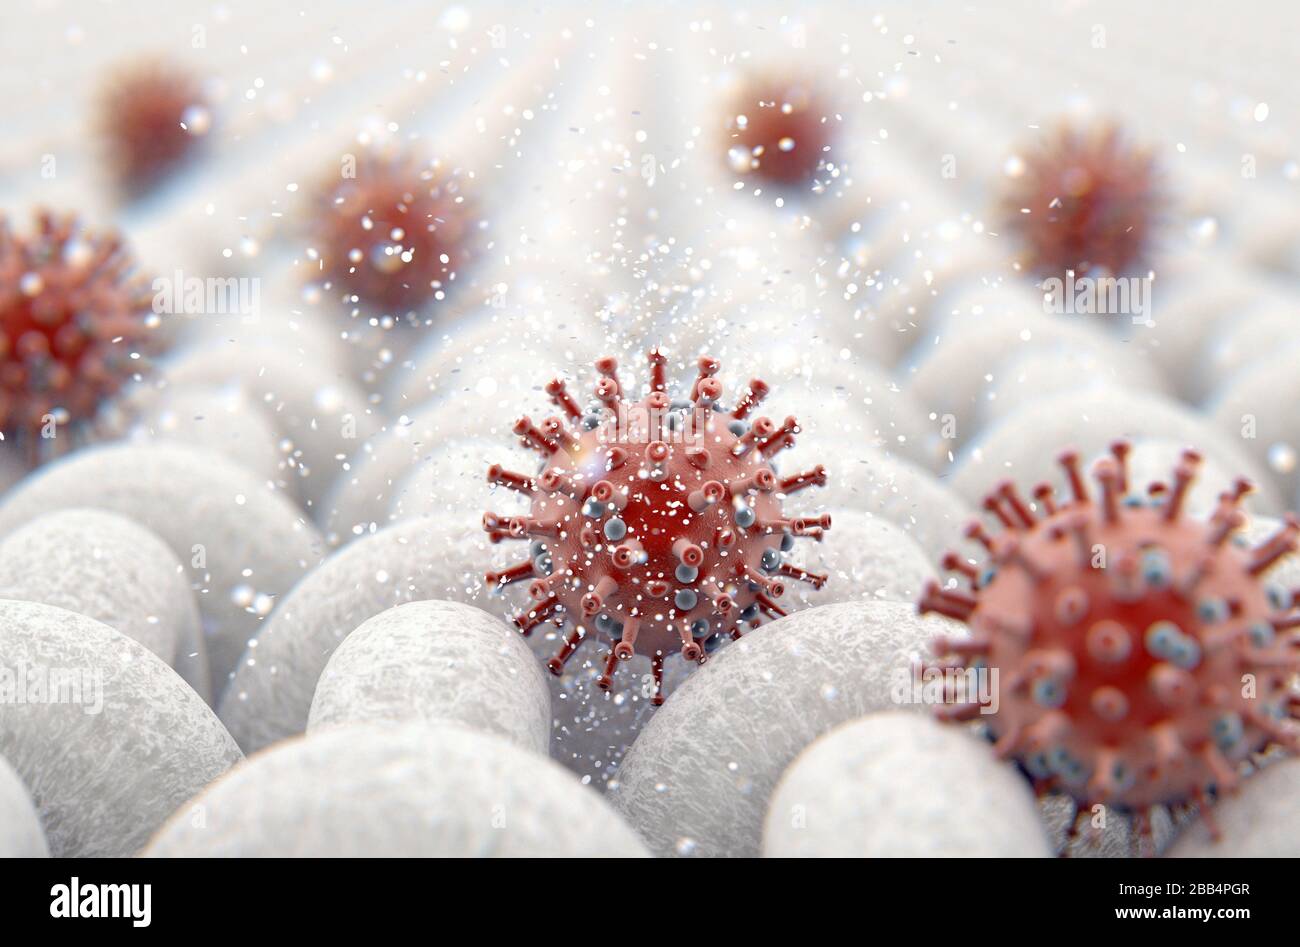 Una vista ravvicinata microscopica di un semplice tessuto tessile e di una particella di coronavirus rosso visibile - resa 3D Foto Stock